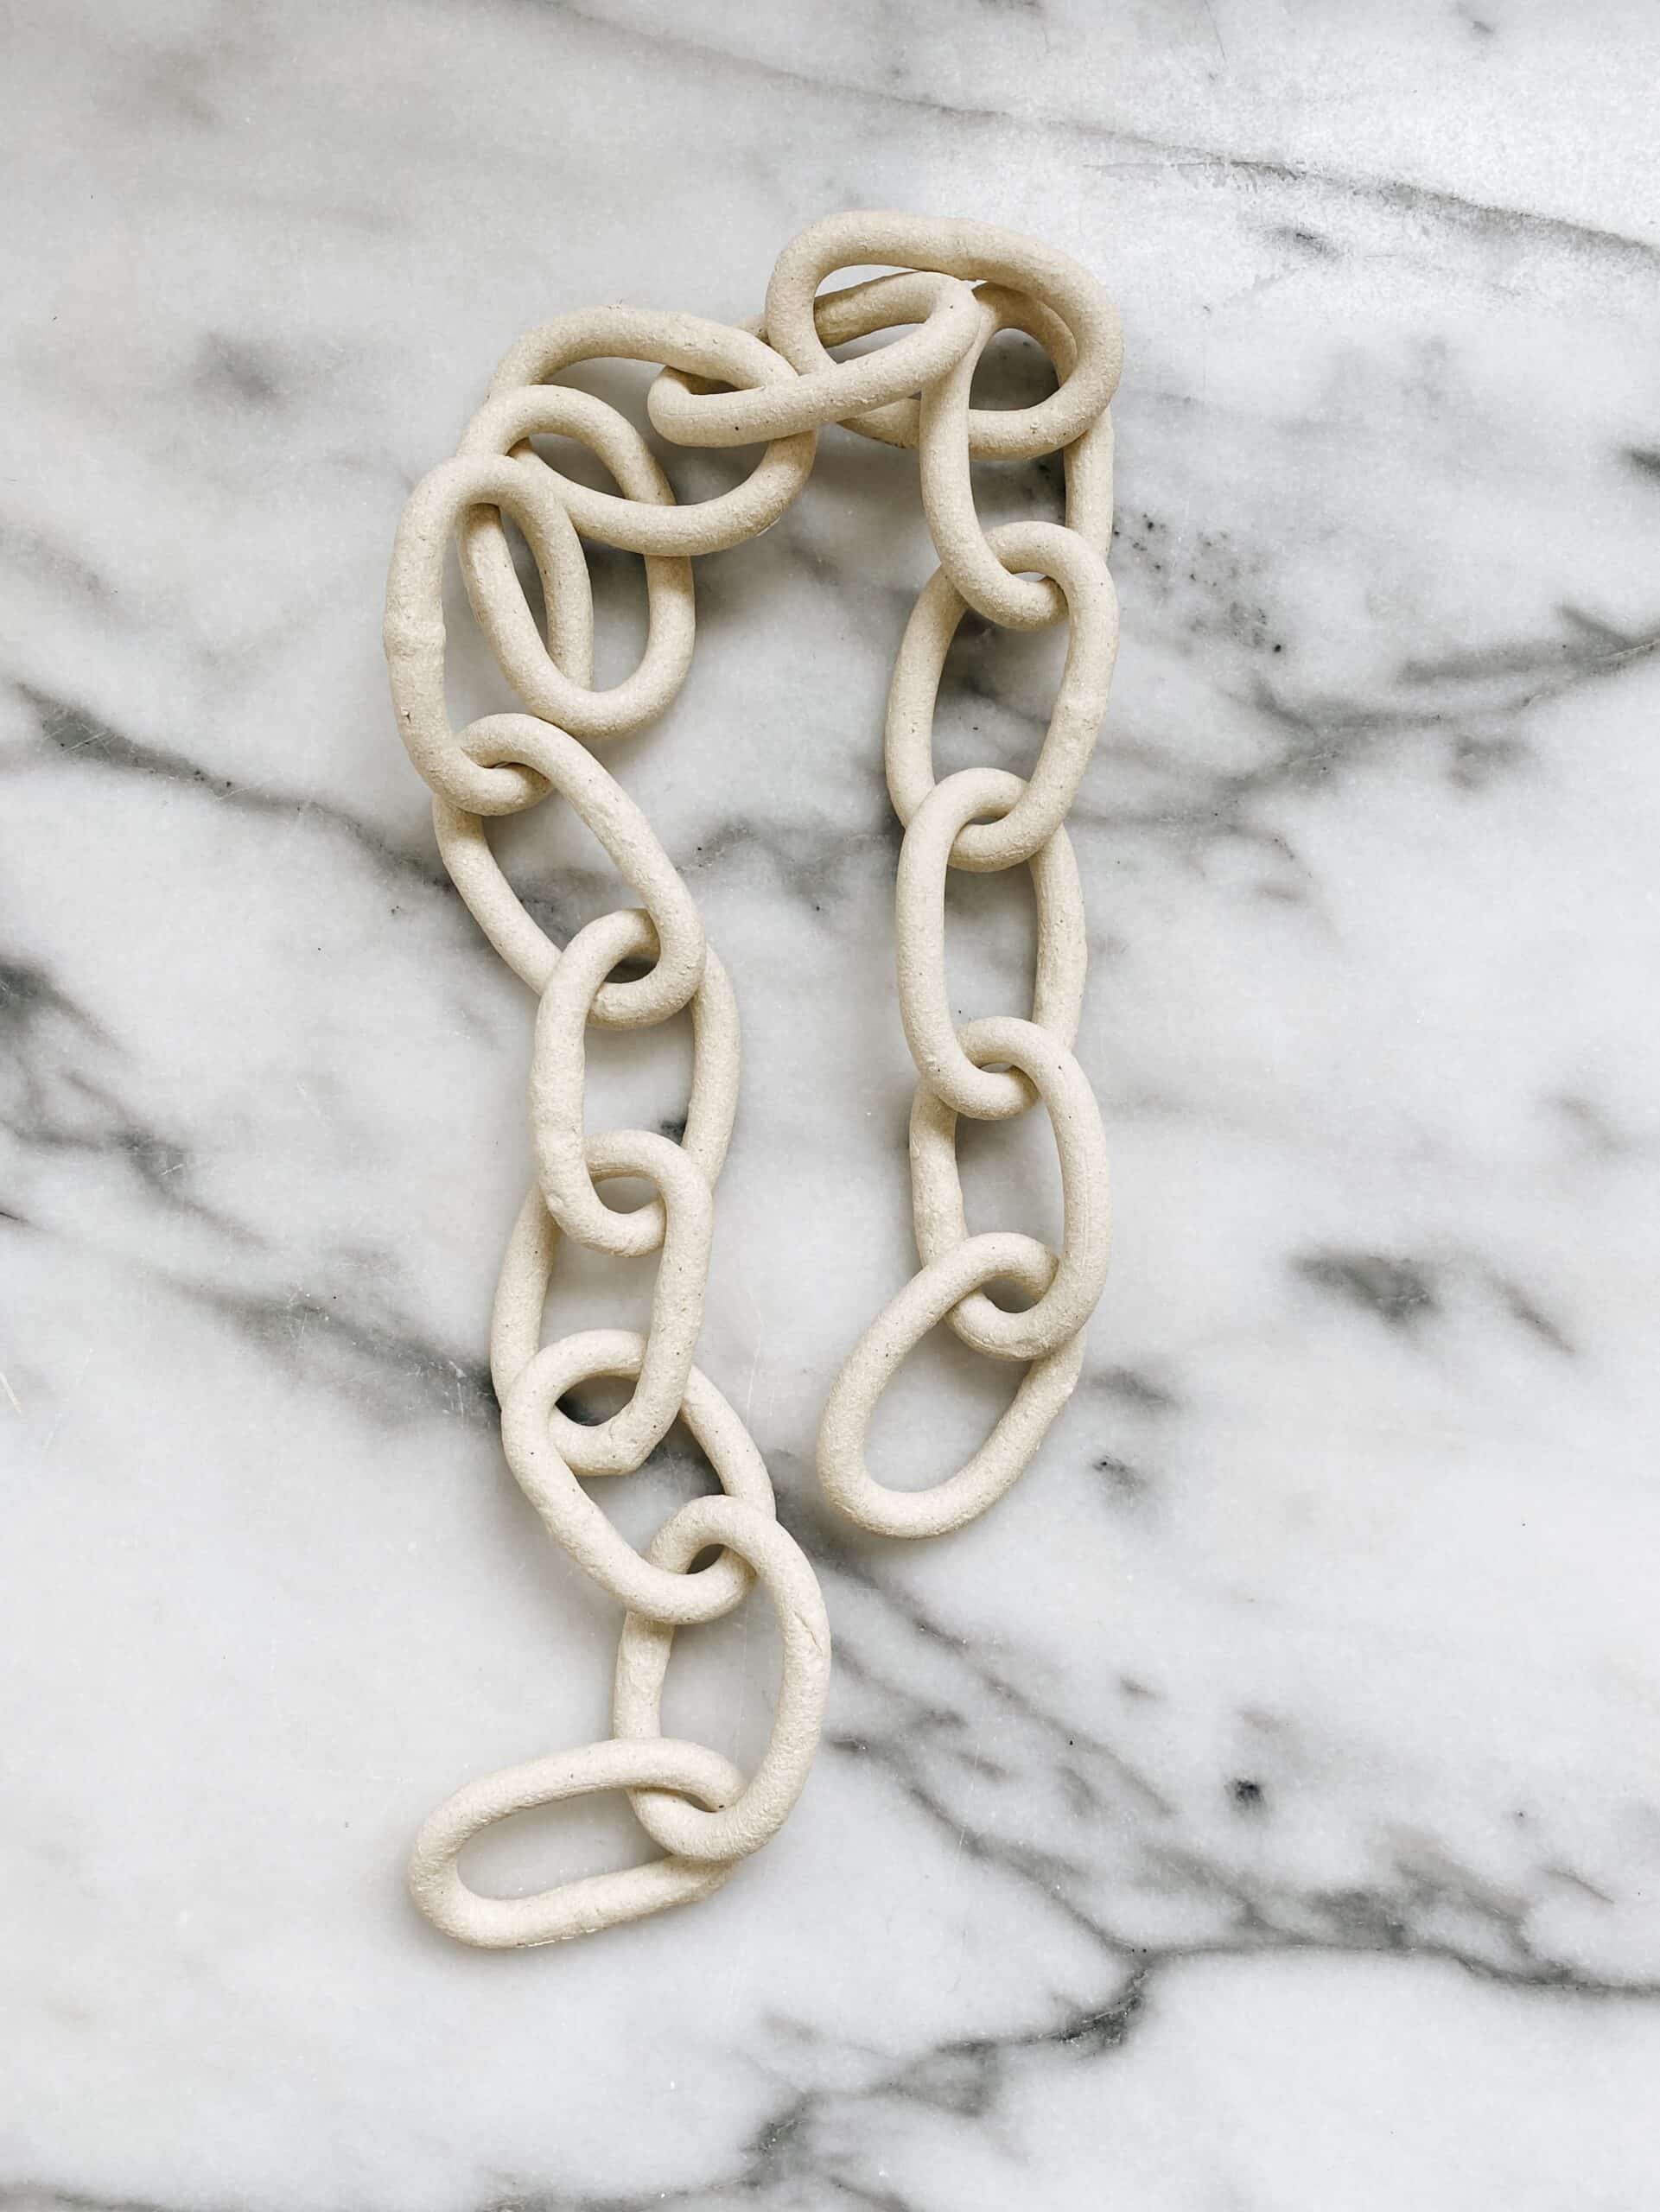 Small Ceramic Decorative Chain